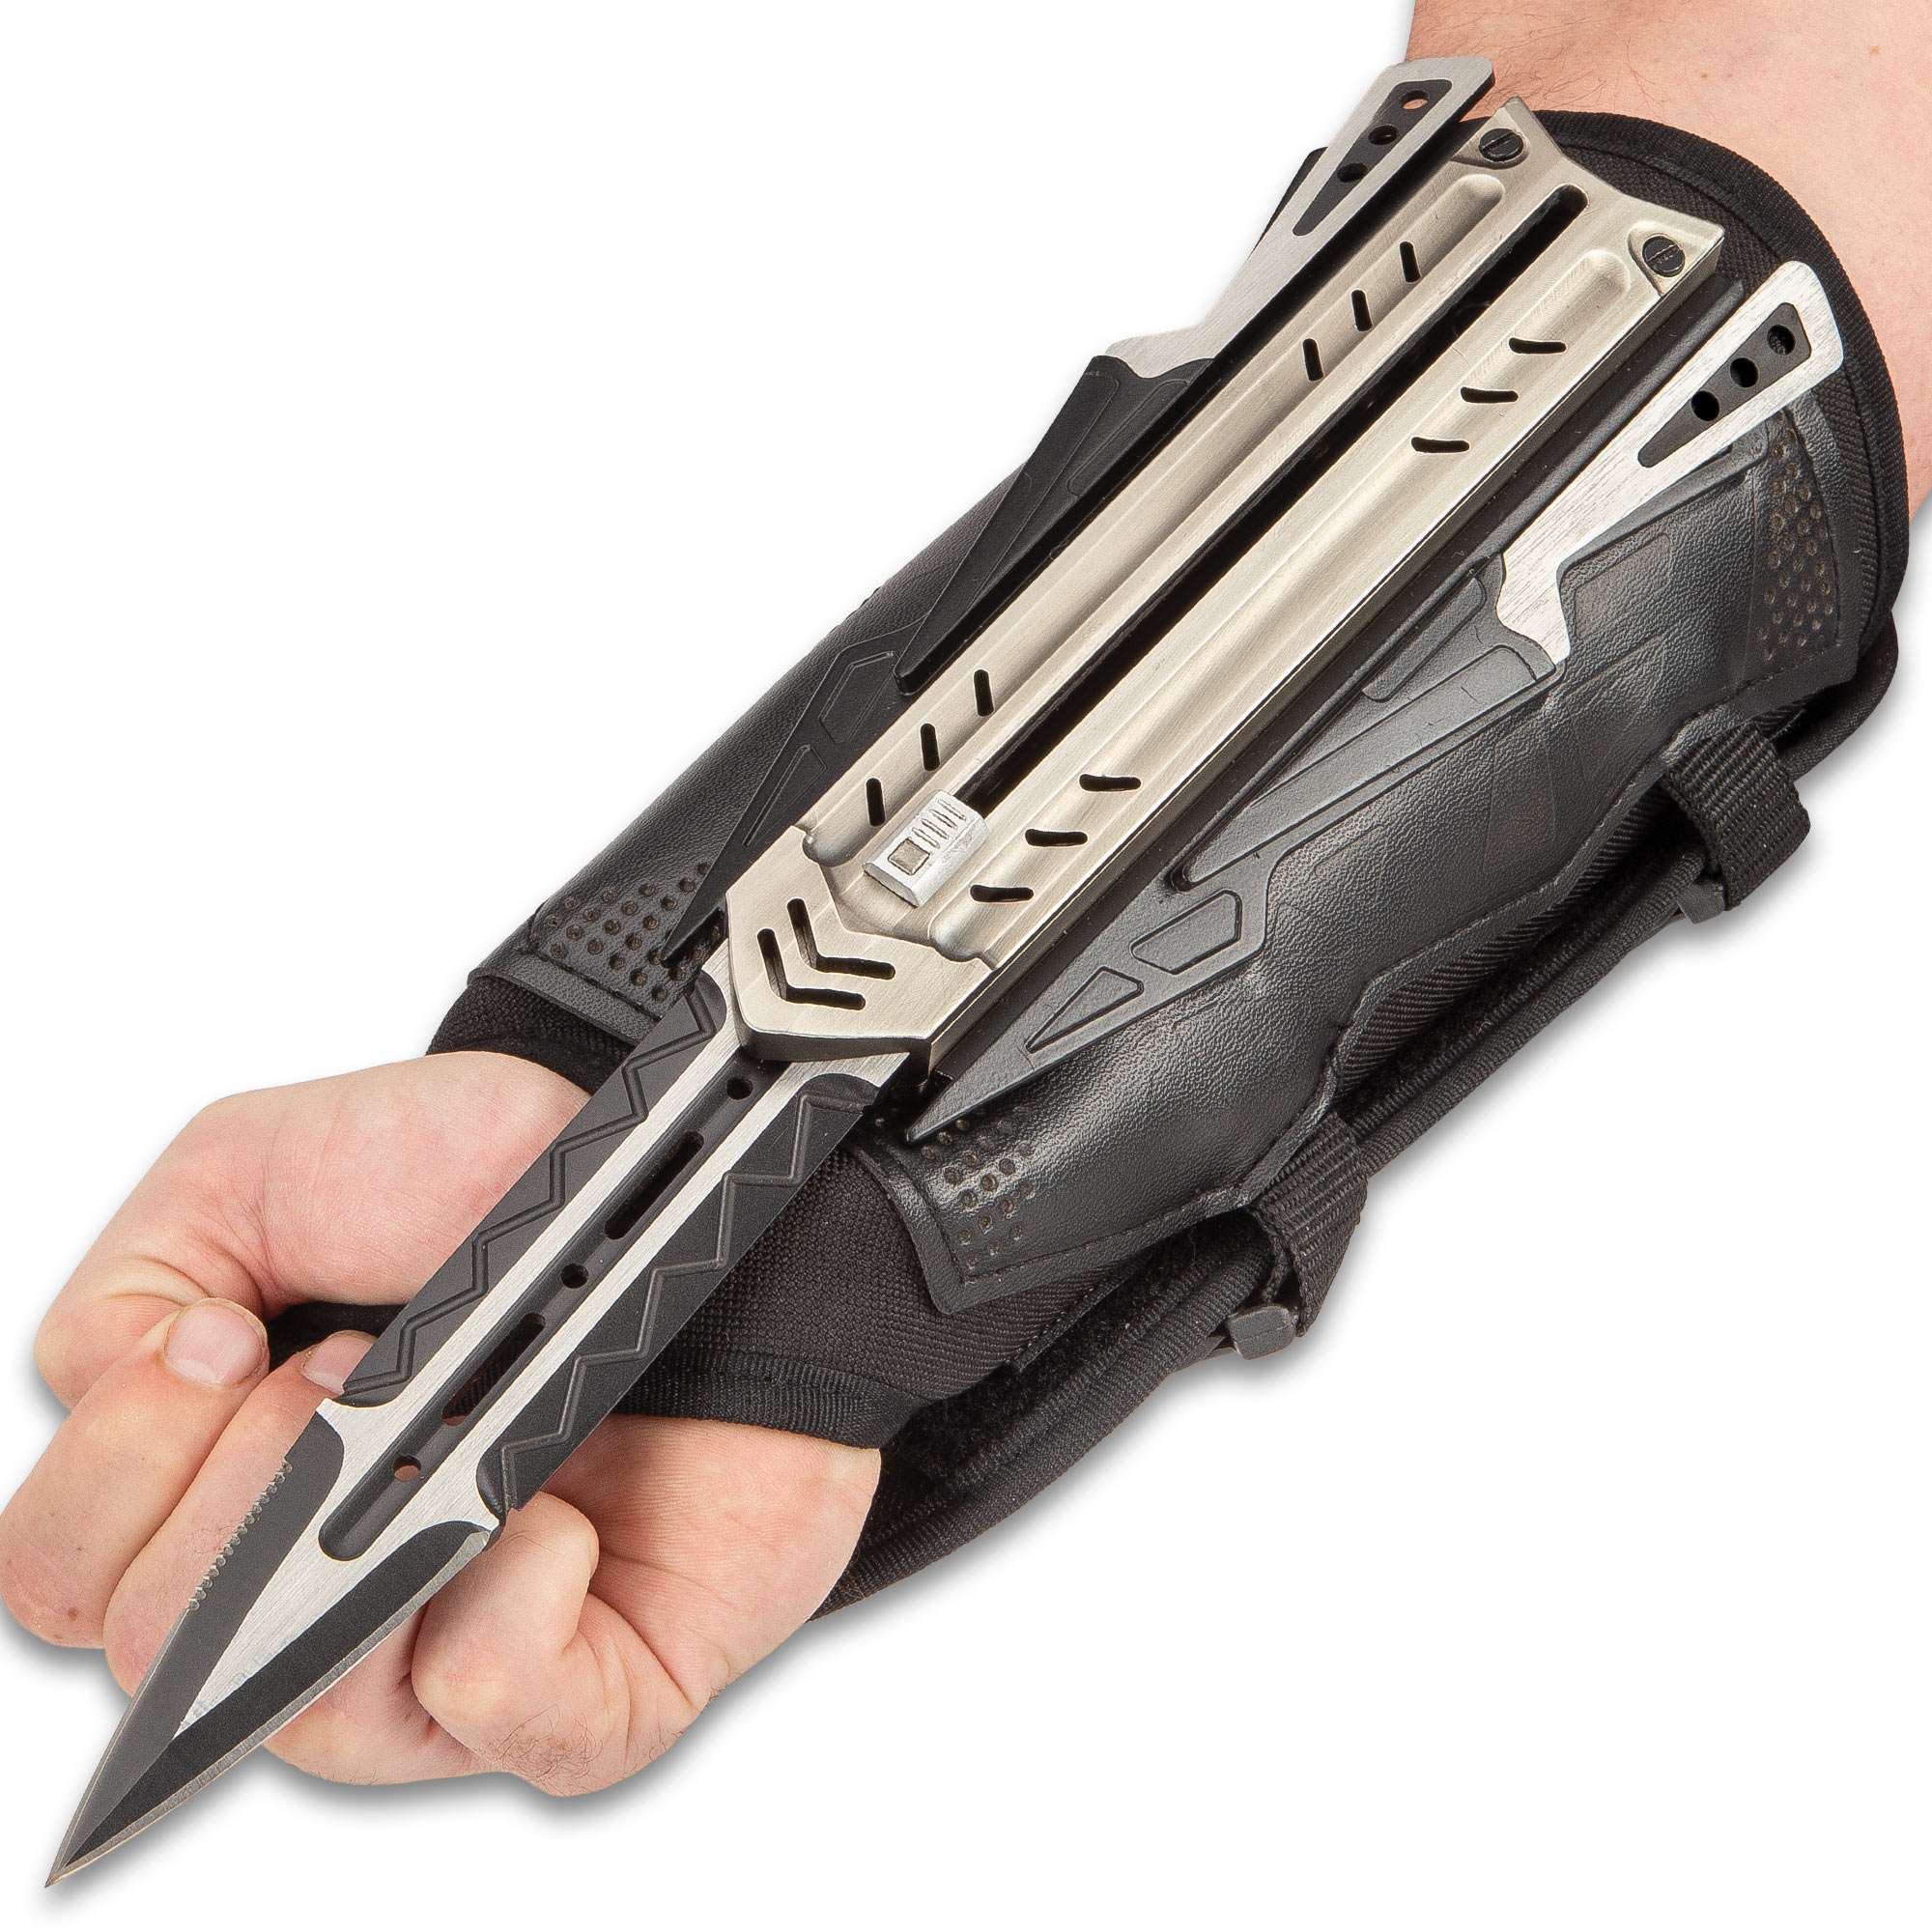 The Enforcer - Taktischer Handschuh mit versteckter Klinge und Wurfmessern